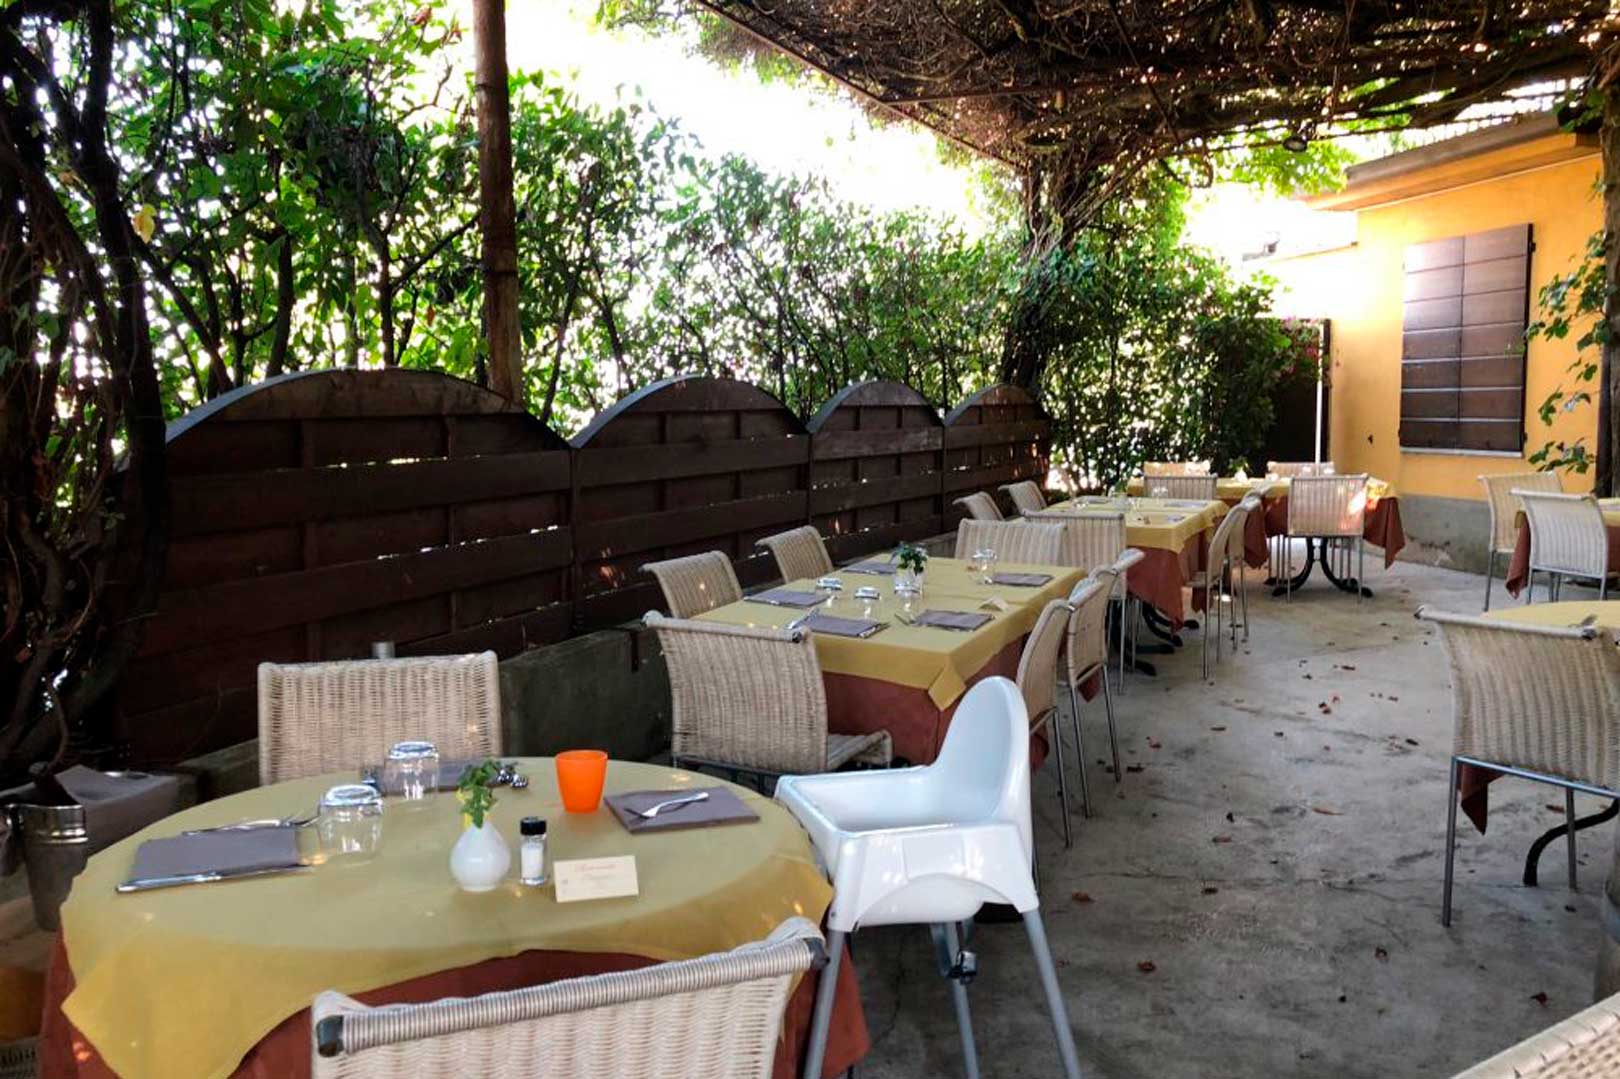 I migliori ristoranti con giardino alle porte di Milano